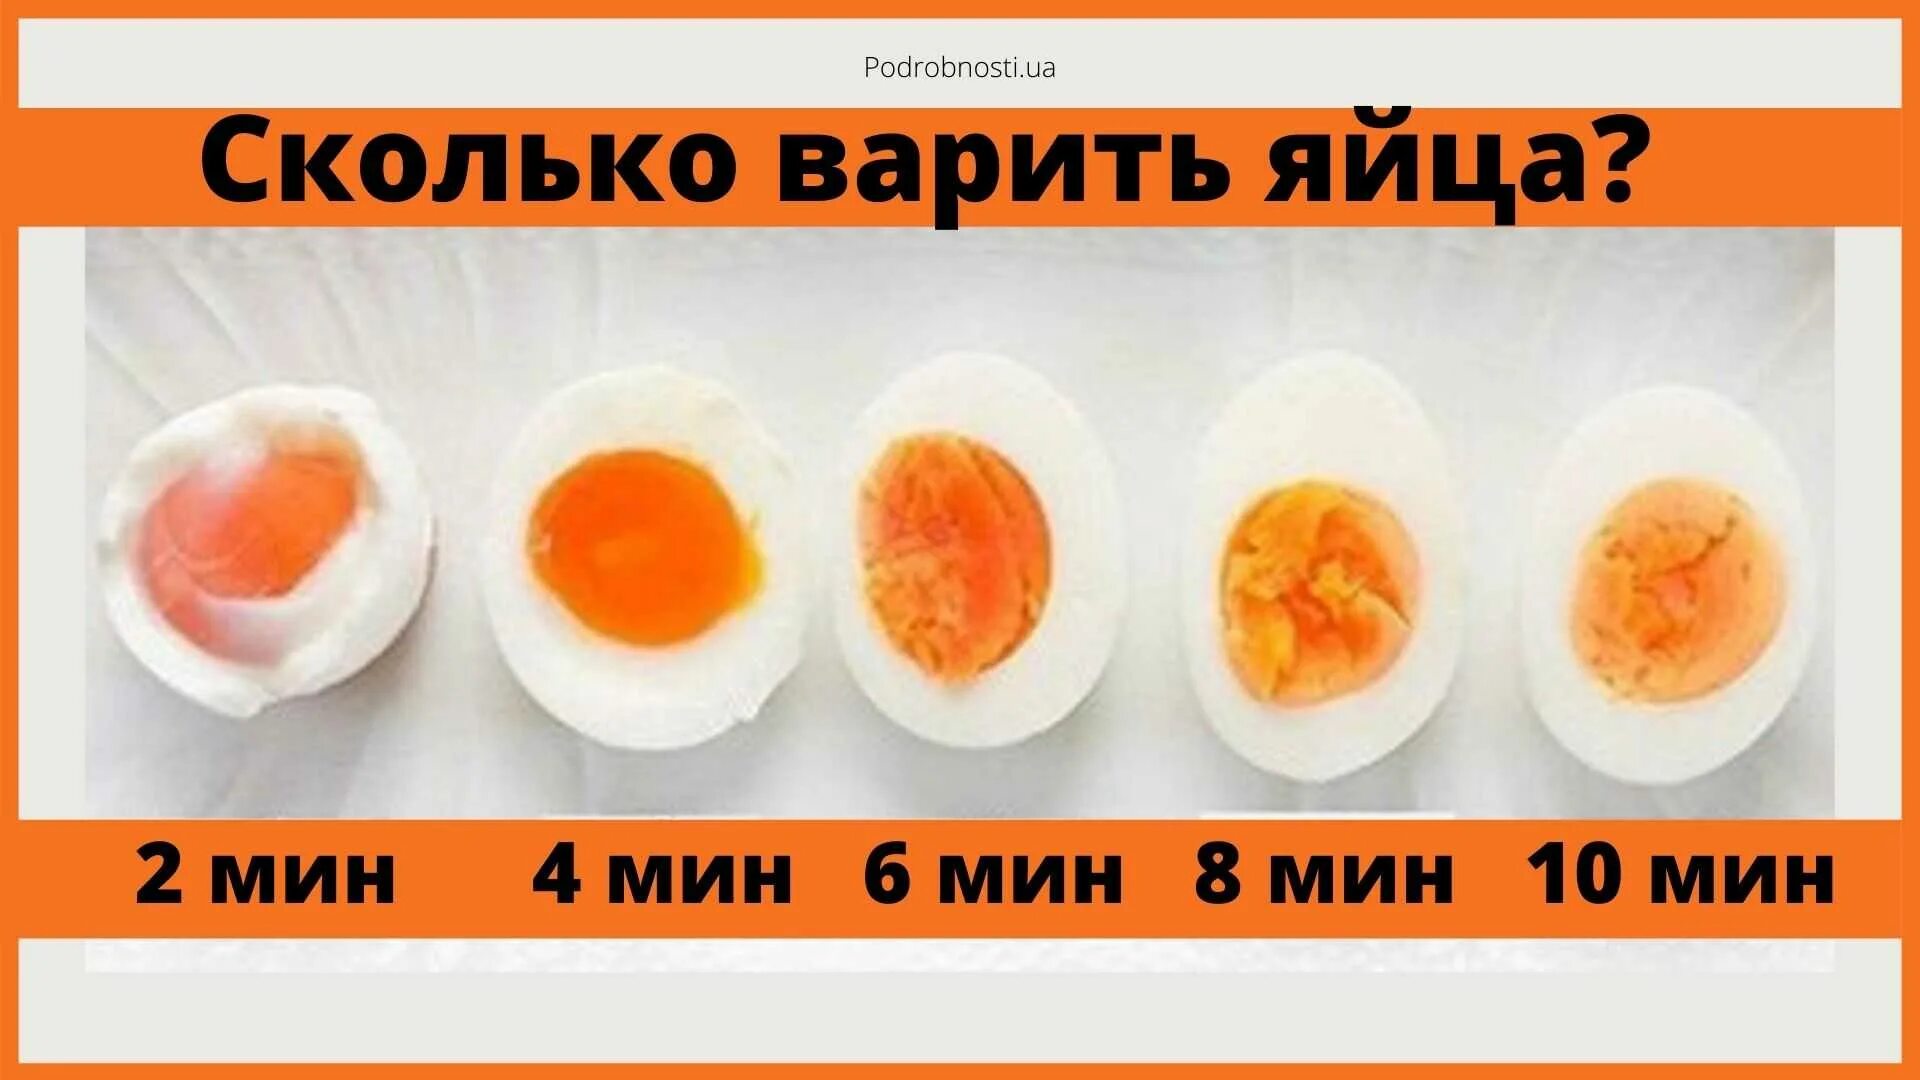 Сколько варить яйца. Сколько варить чйцо в смятку. Сколько варить яицо всмятку. Сколько варить яйца в смятуу.